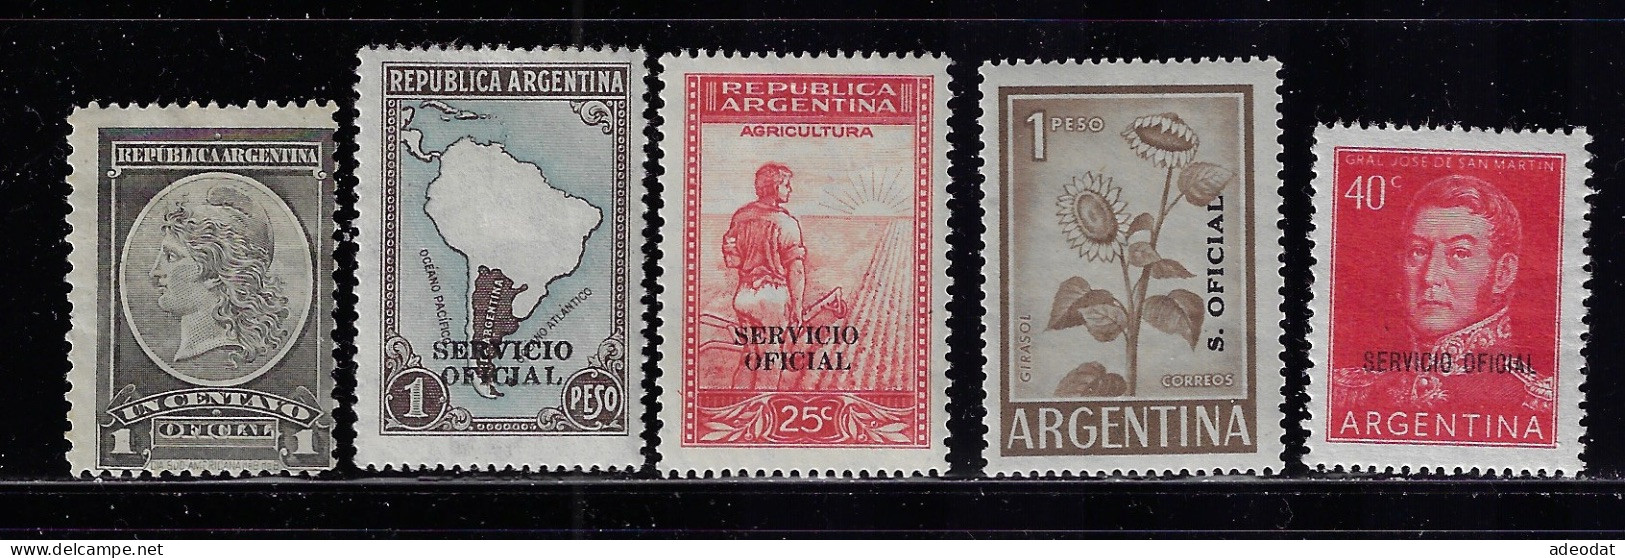 ARGENTINA 1901-1960  OFFICIAL STAMPS  SCOTT #O31,O49,O51,O96,O116  MH - Nuevos